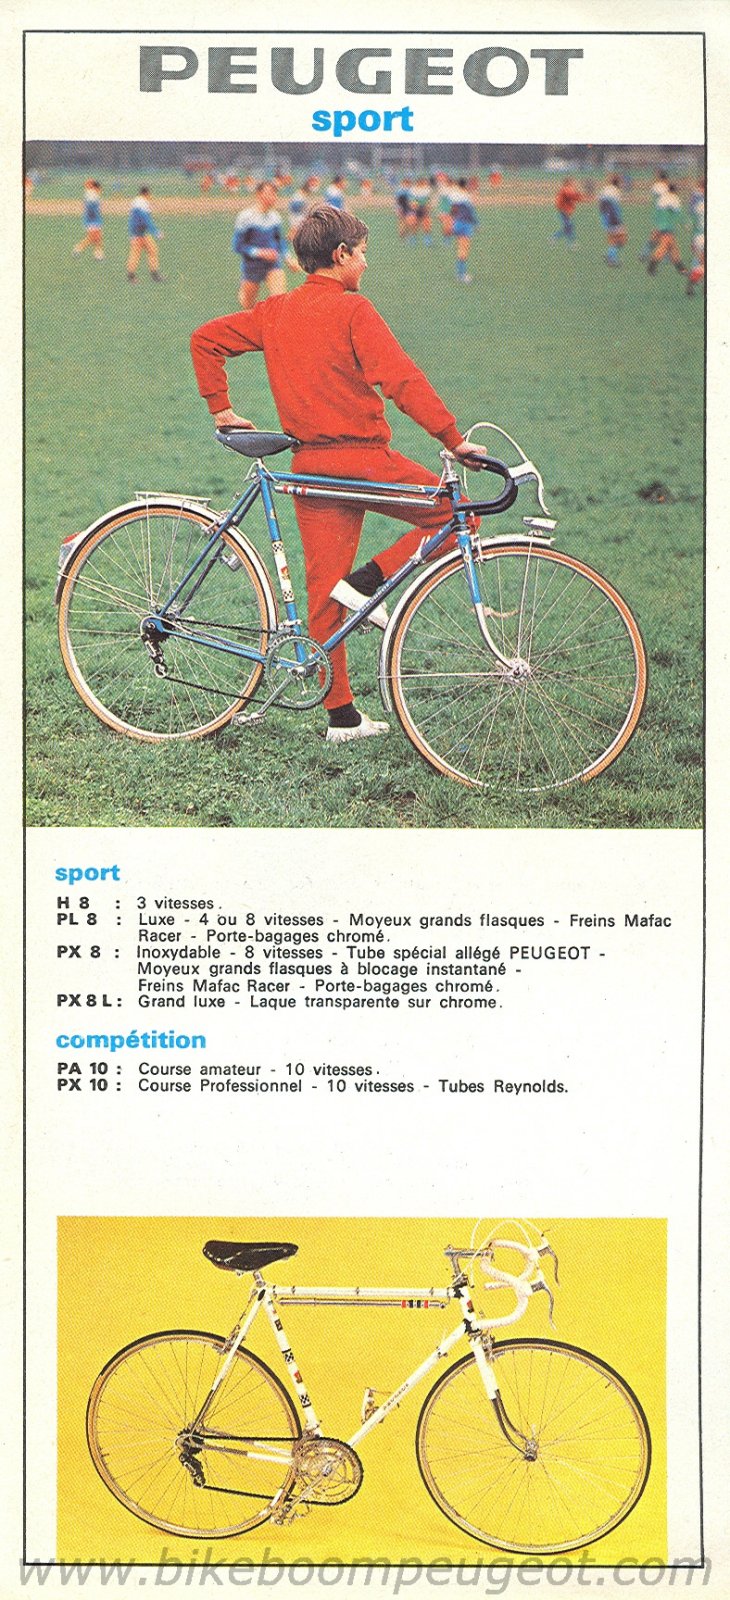 Peugeot 1966 France Brochure Sport.jpg